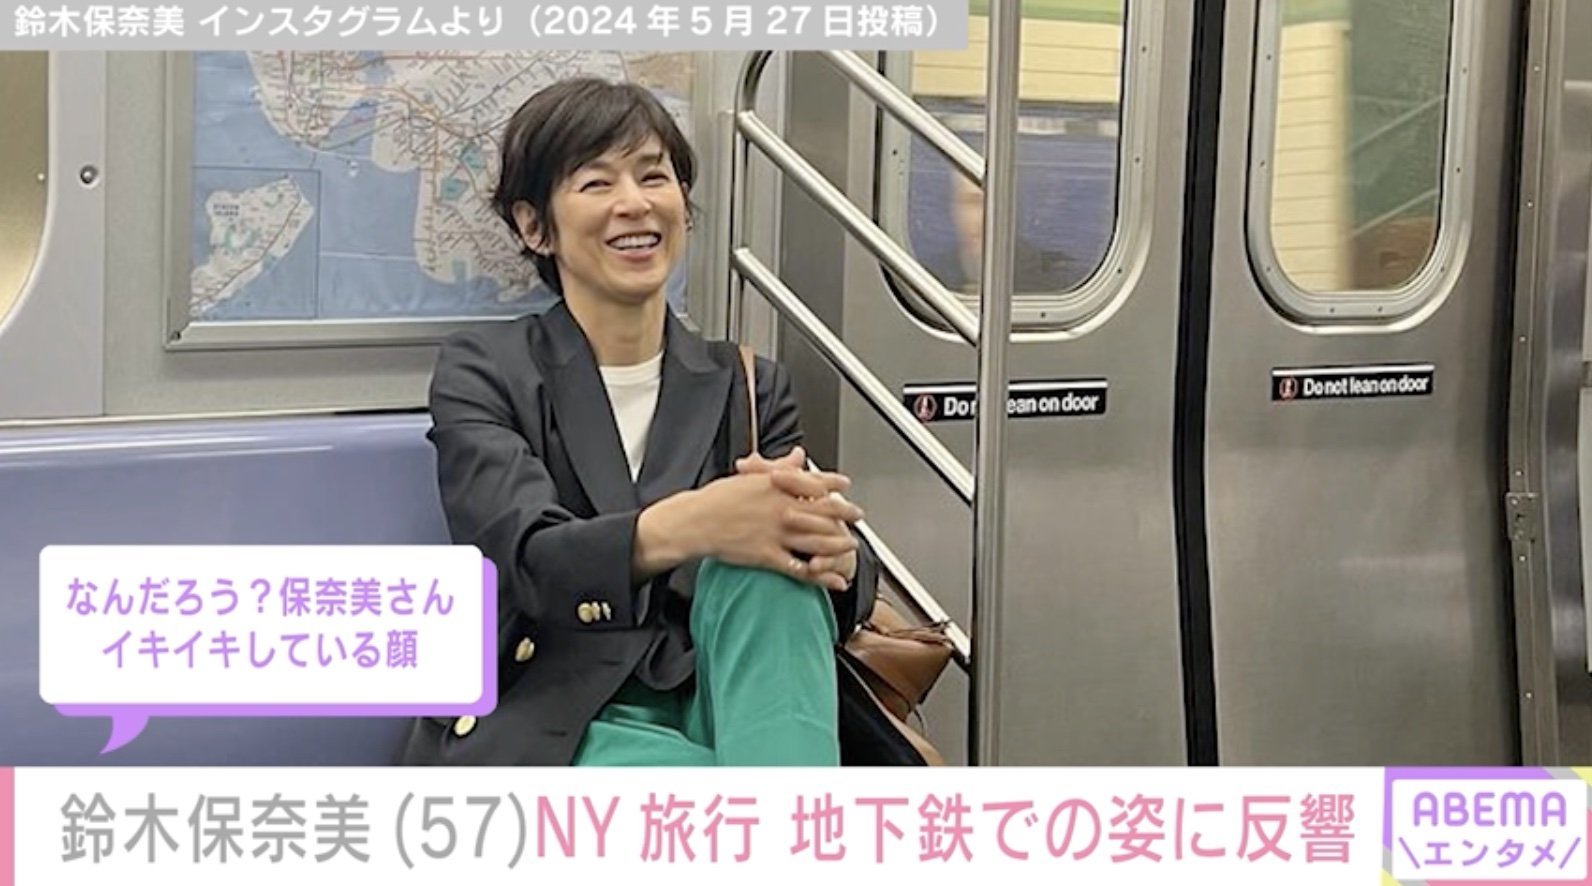 鈴木保奈美、NYの地下鉄で撮影した姿に反響「足長でかっこいい」「おしゃれですね」(ABEMA TIMES)